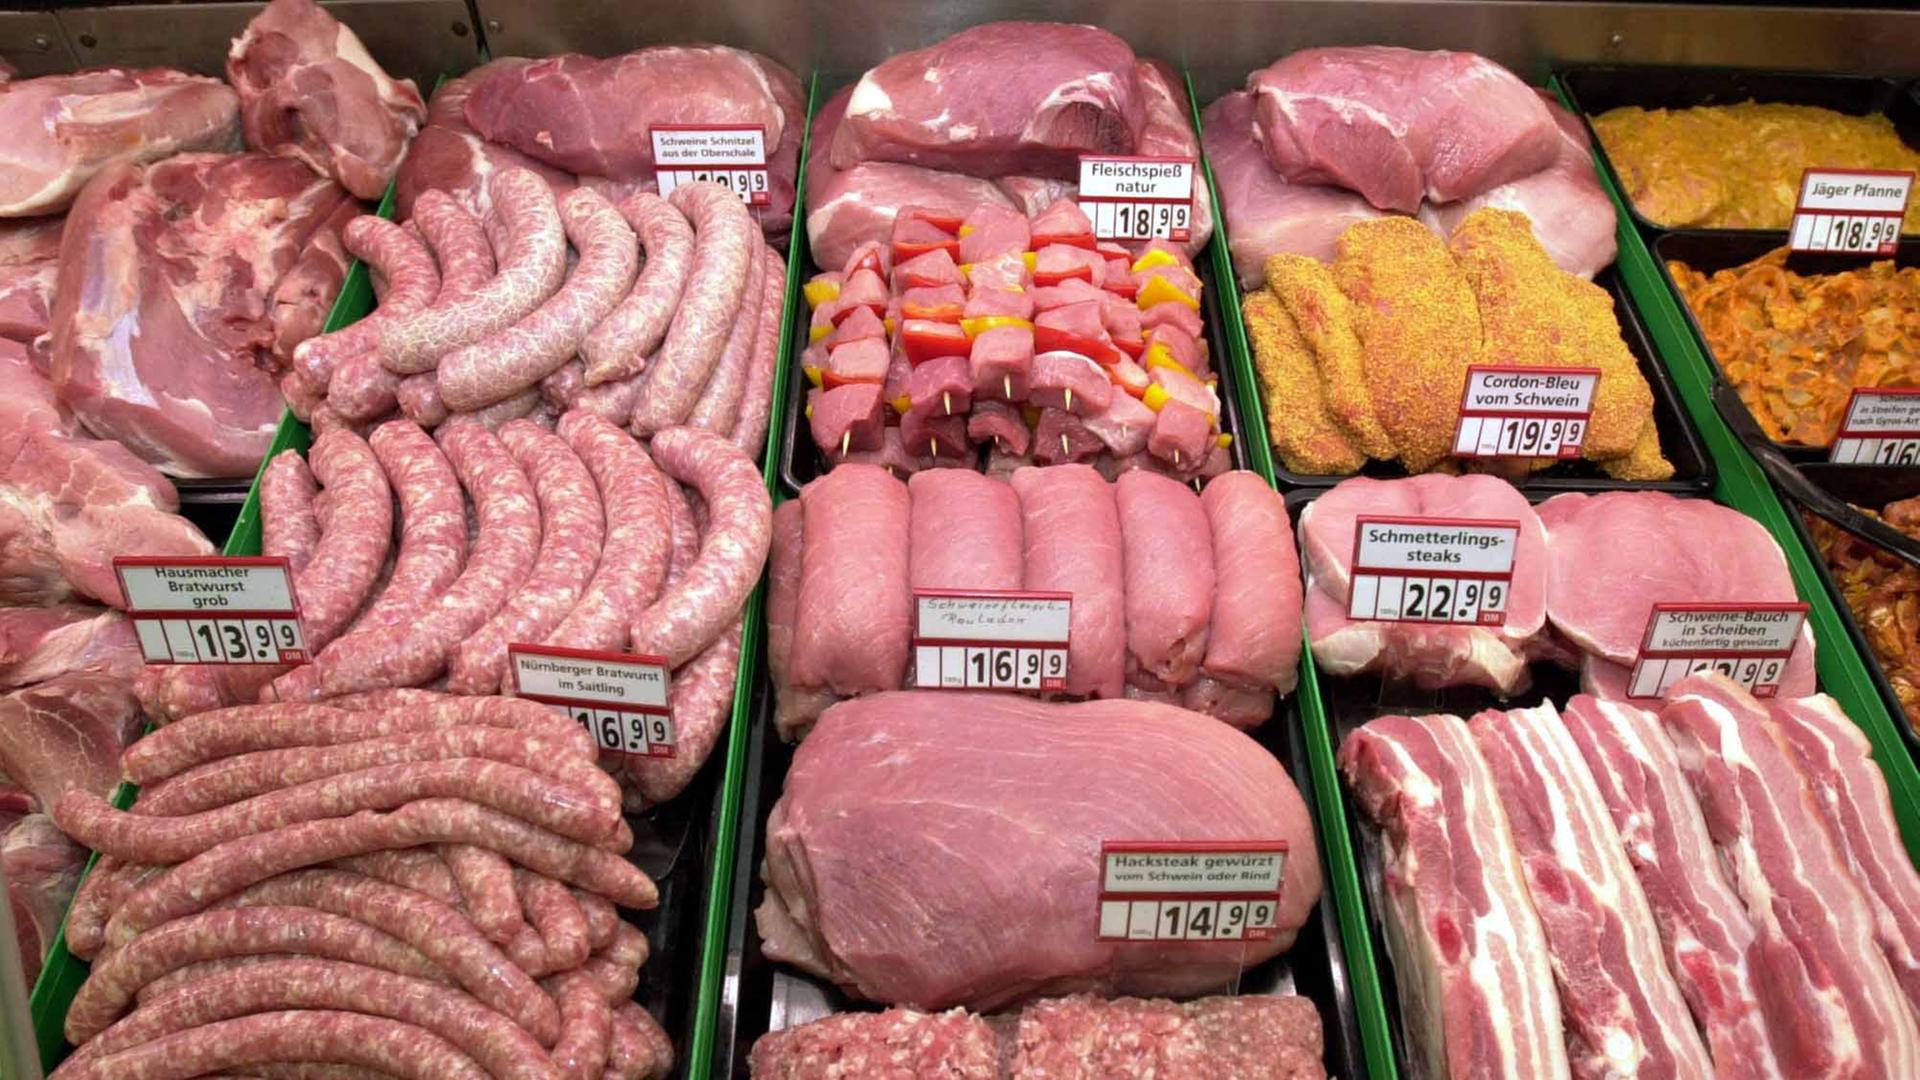 Das Angebot von Schweinefleisch aus hessischen Unternehmen in einem Supermarkt in Kelkheim, aufgenommen am 26.3.2001. Wichtigstes Anliegen ist es der Marketinggesellschaft "Gutes aus Hessen e.V." zufolge, das bei den Verbrauchern verlorene Vertrauen zurückzugewinnen. Dies könne nur durch Transparenz und Seriösität gelingen. Für den Verbraucher bedeutet dies, dass Umwelt- und Tierschutzaspekten durch kurze Transportwege in hohem Maße Rechnung getragen wird, da die Tiere im zentralen Schlachthof Marburg geschlachtet, in Wetzlar zerlegt und von dort aus direkt in die Supermärkte geliefert werden.